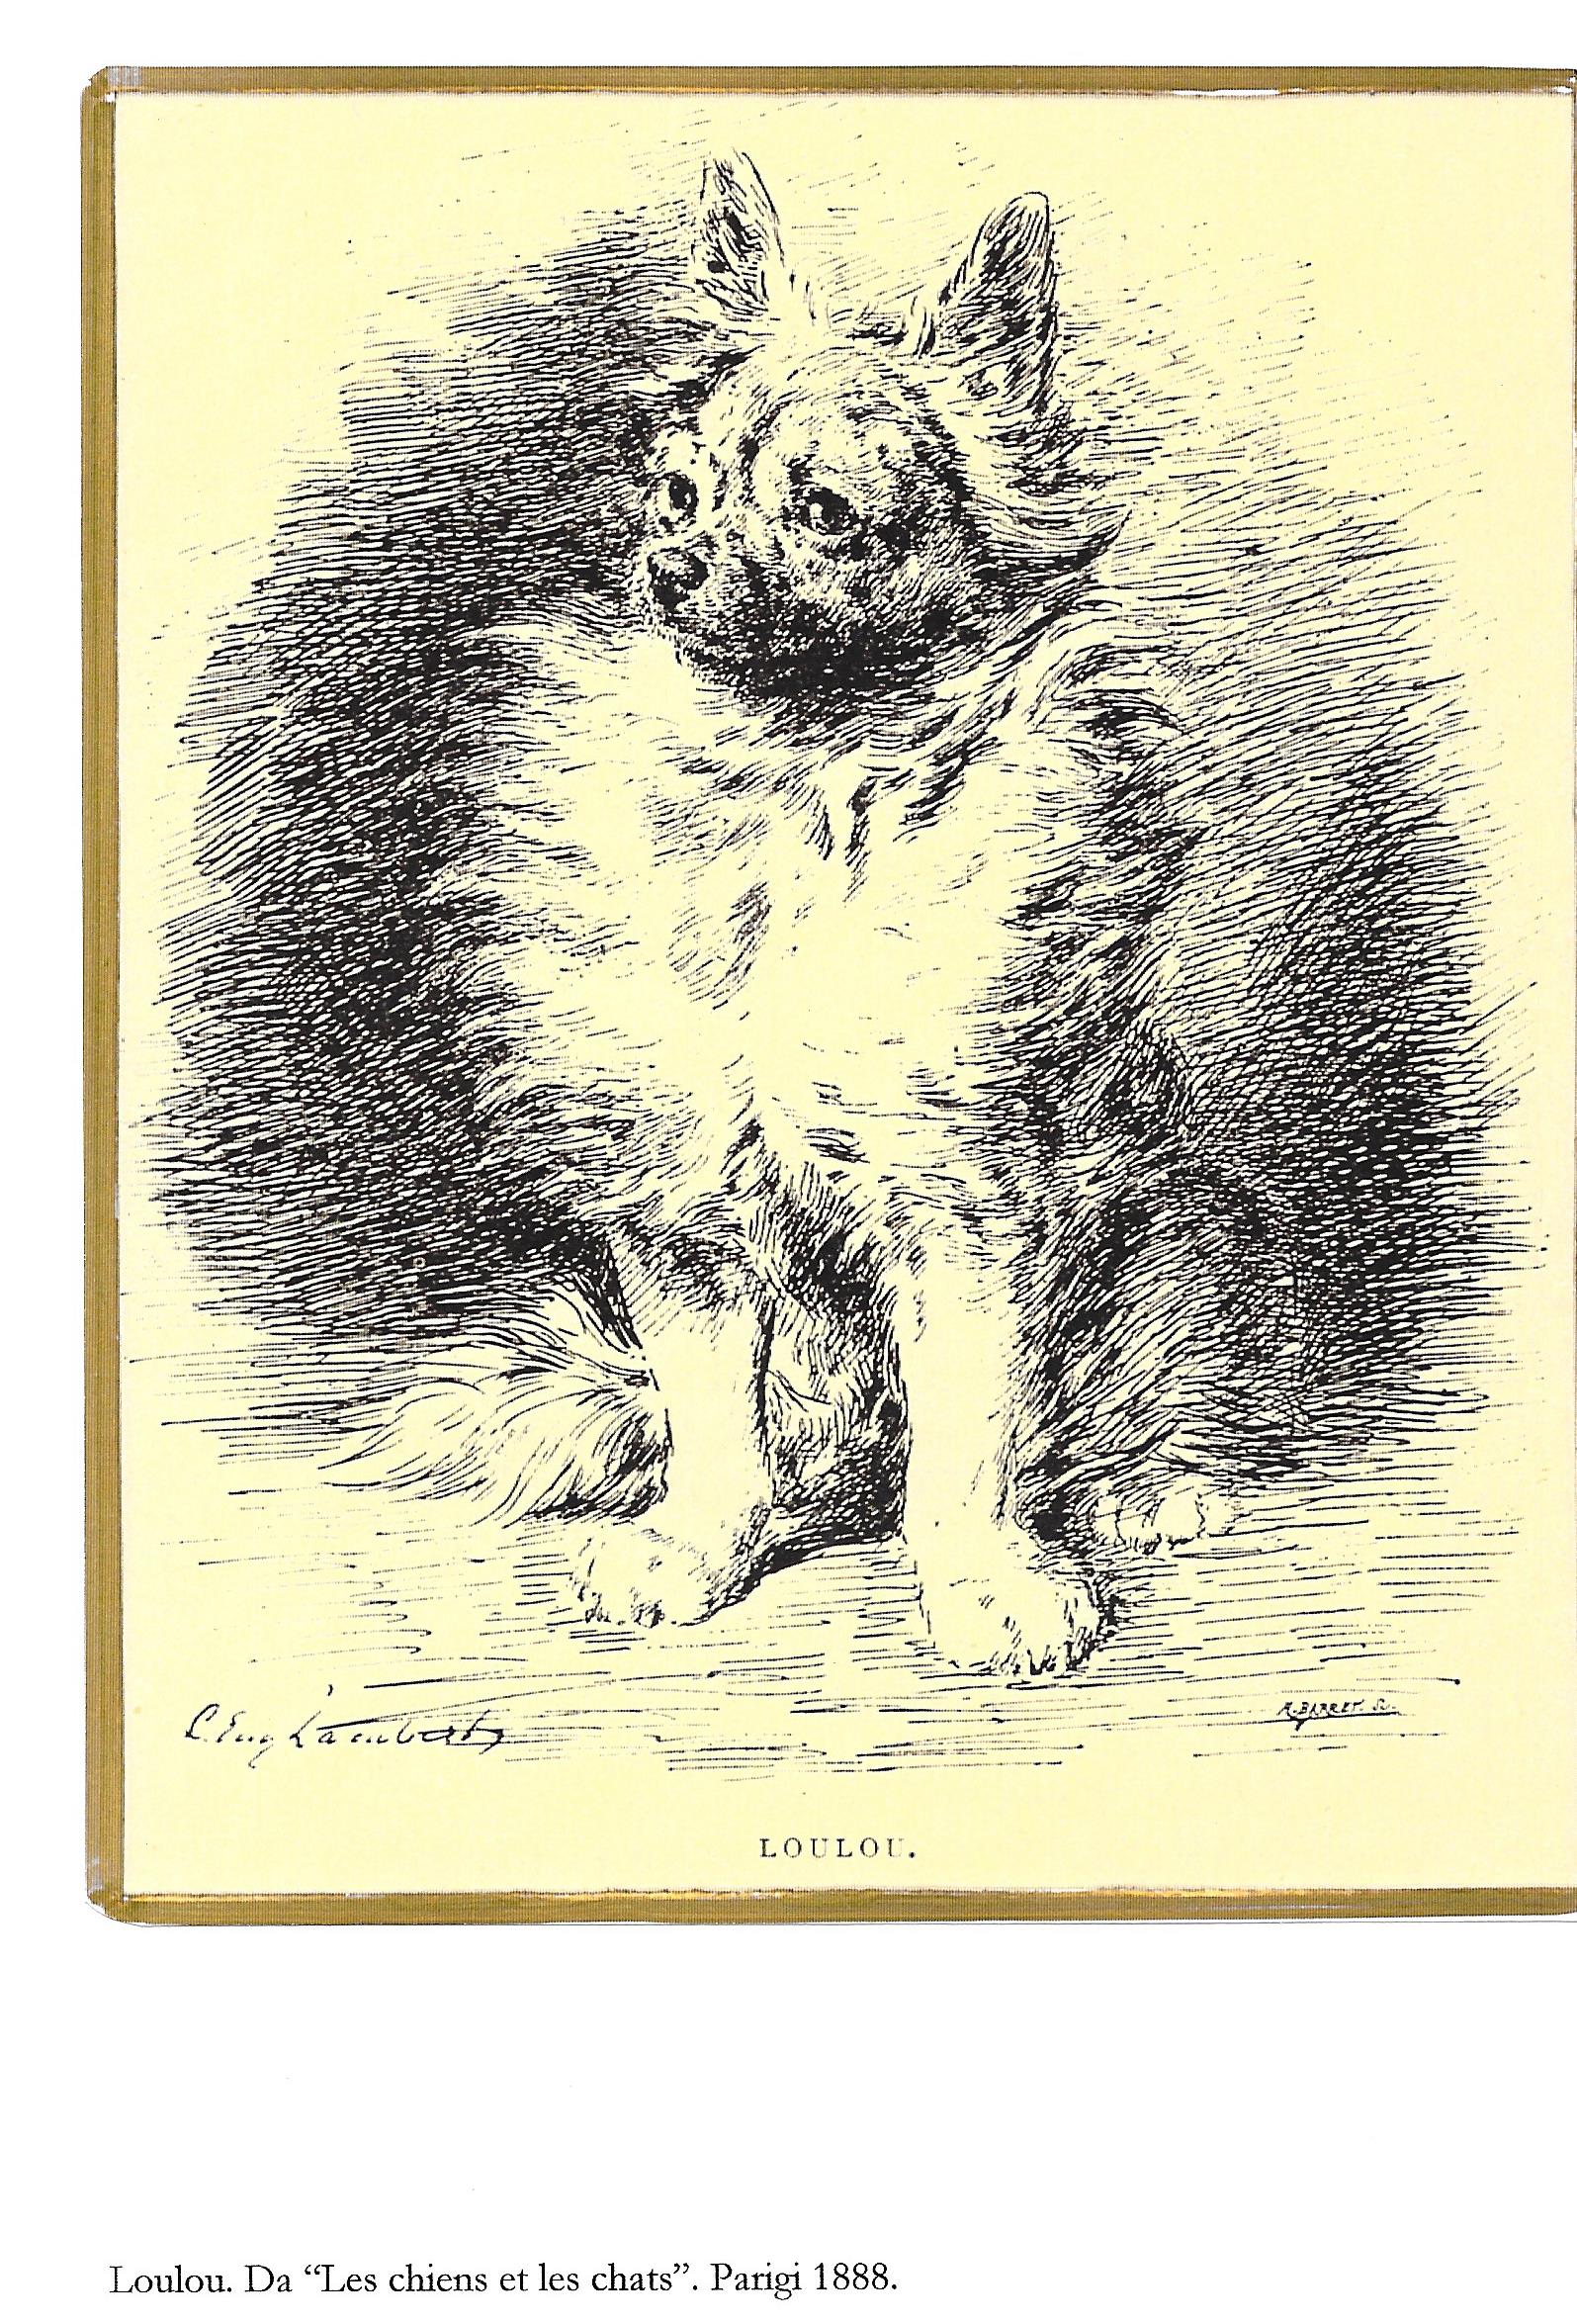 12 Loulou. Da "Les chiens et les chats". Paris 1888